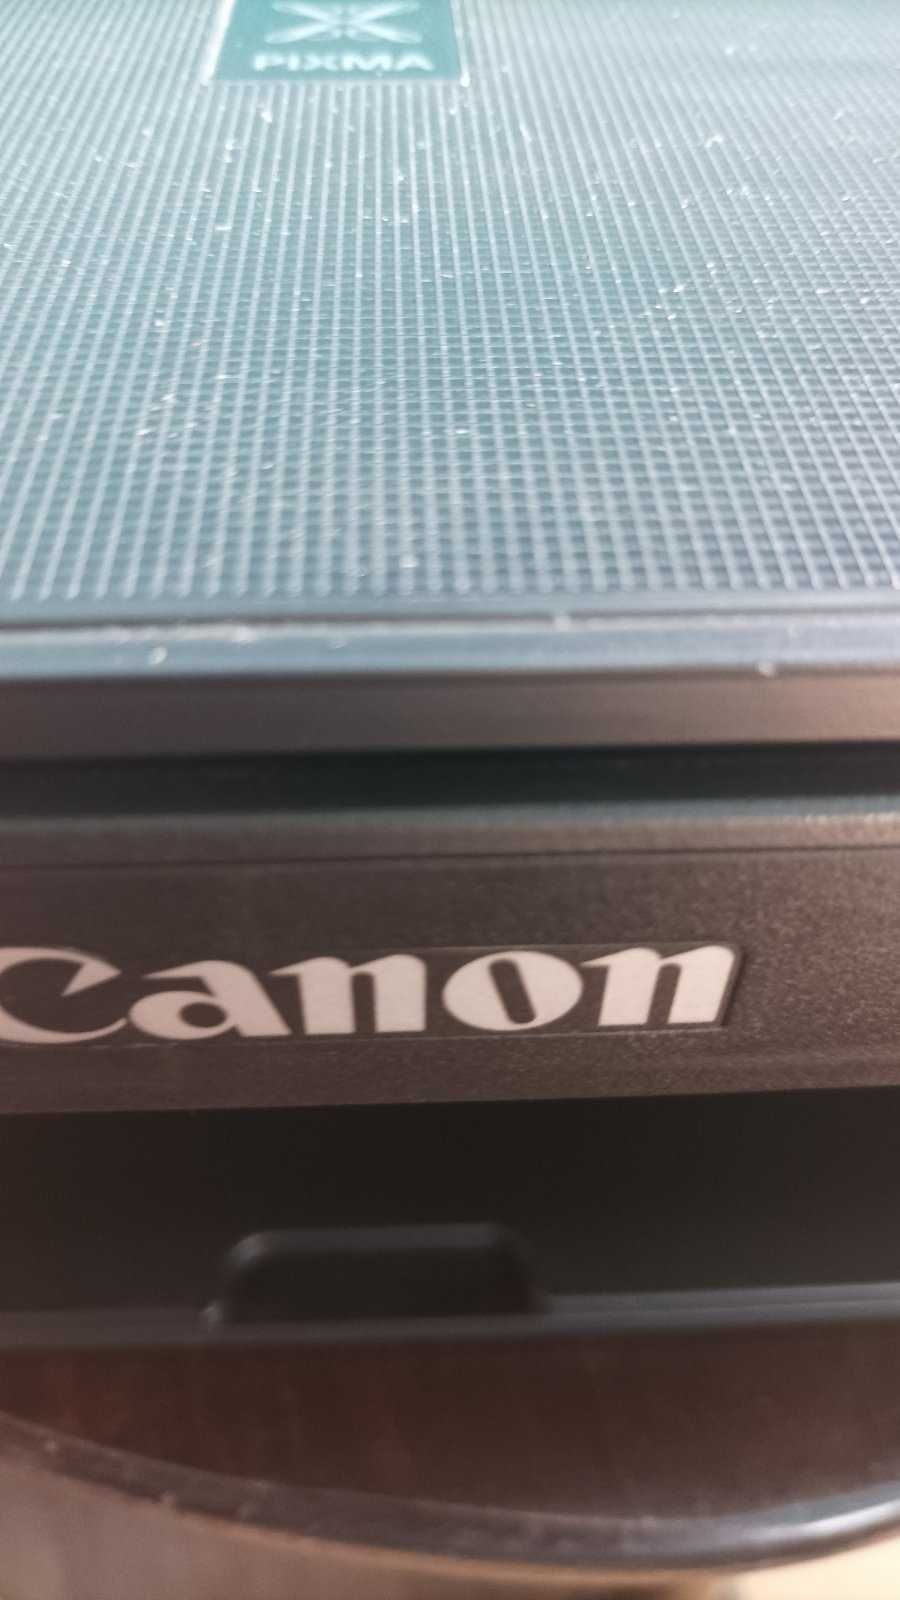 Принтер 3 в 1 Canon